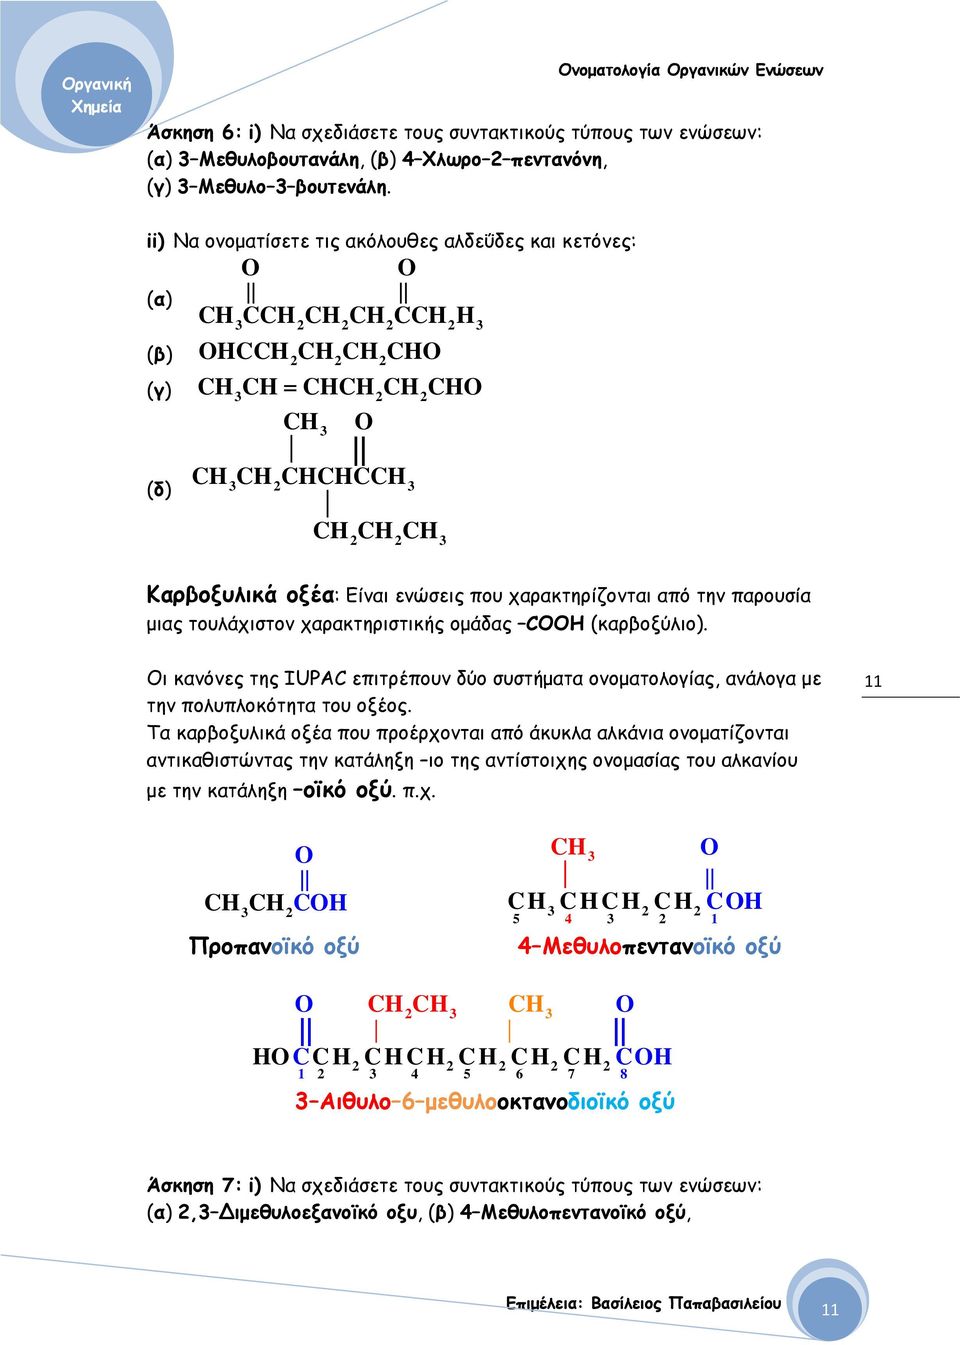 (καρβοξύλιο). Οι κανόνες της IUPAC επιτρέπουν δύο συστήματα ονοματολογίας, ανάλογα με την πολυπλοκότητα του οξέος.